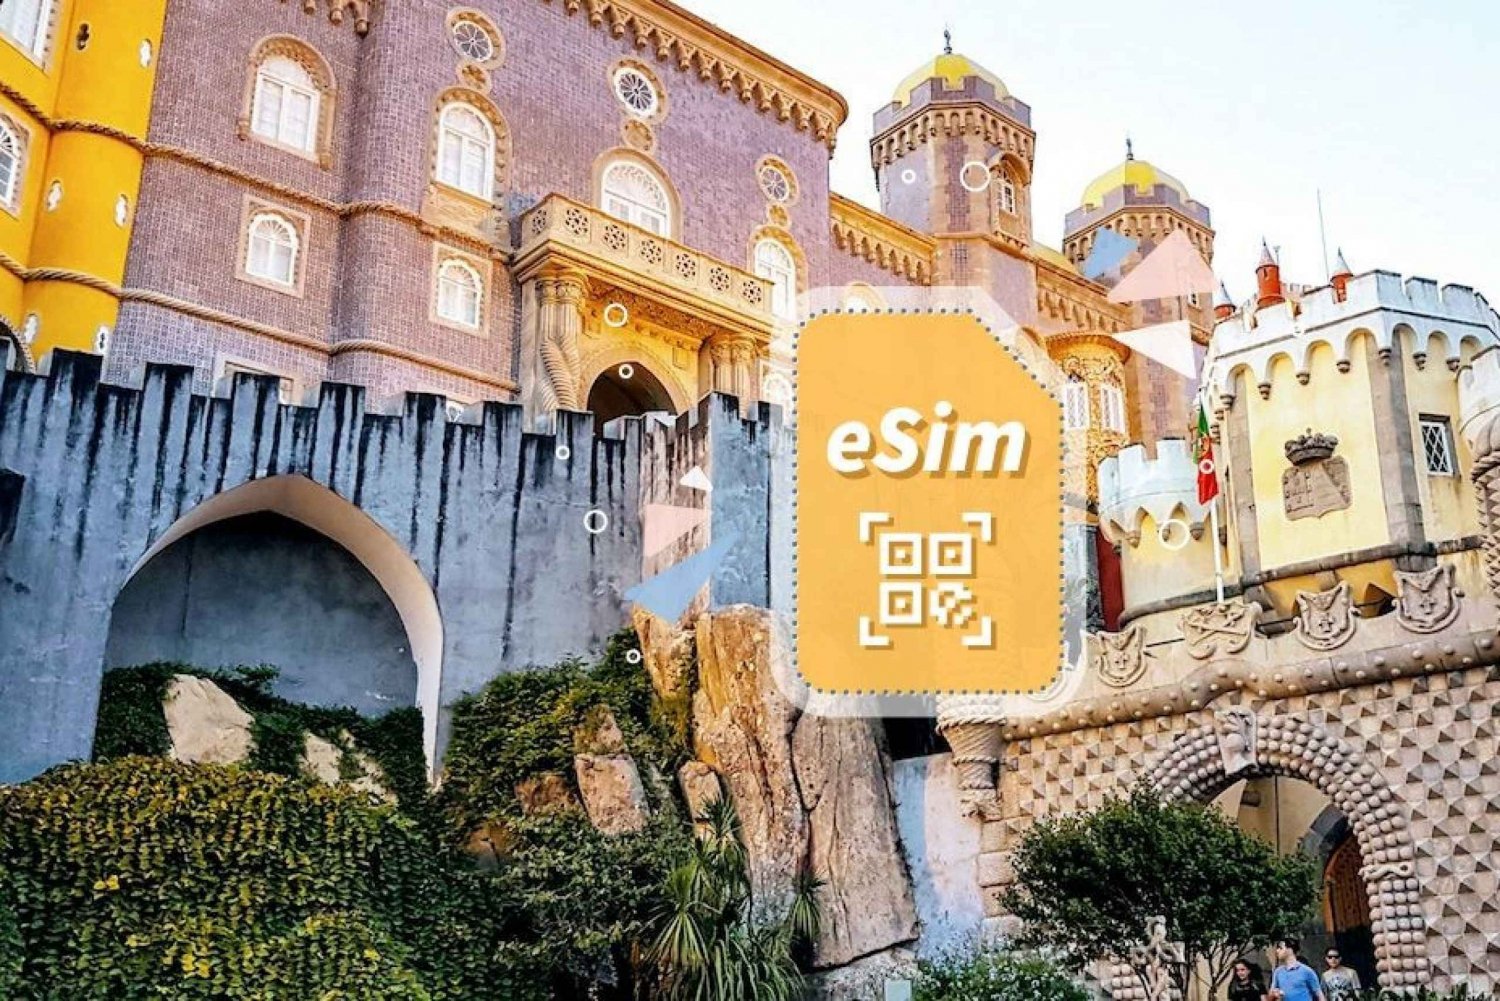 Portogallo/Europa: Piano dati mobile 5G eSim